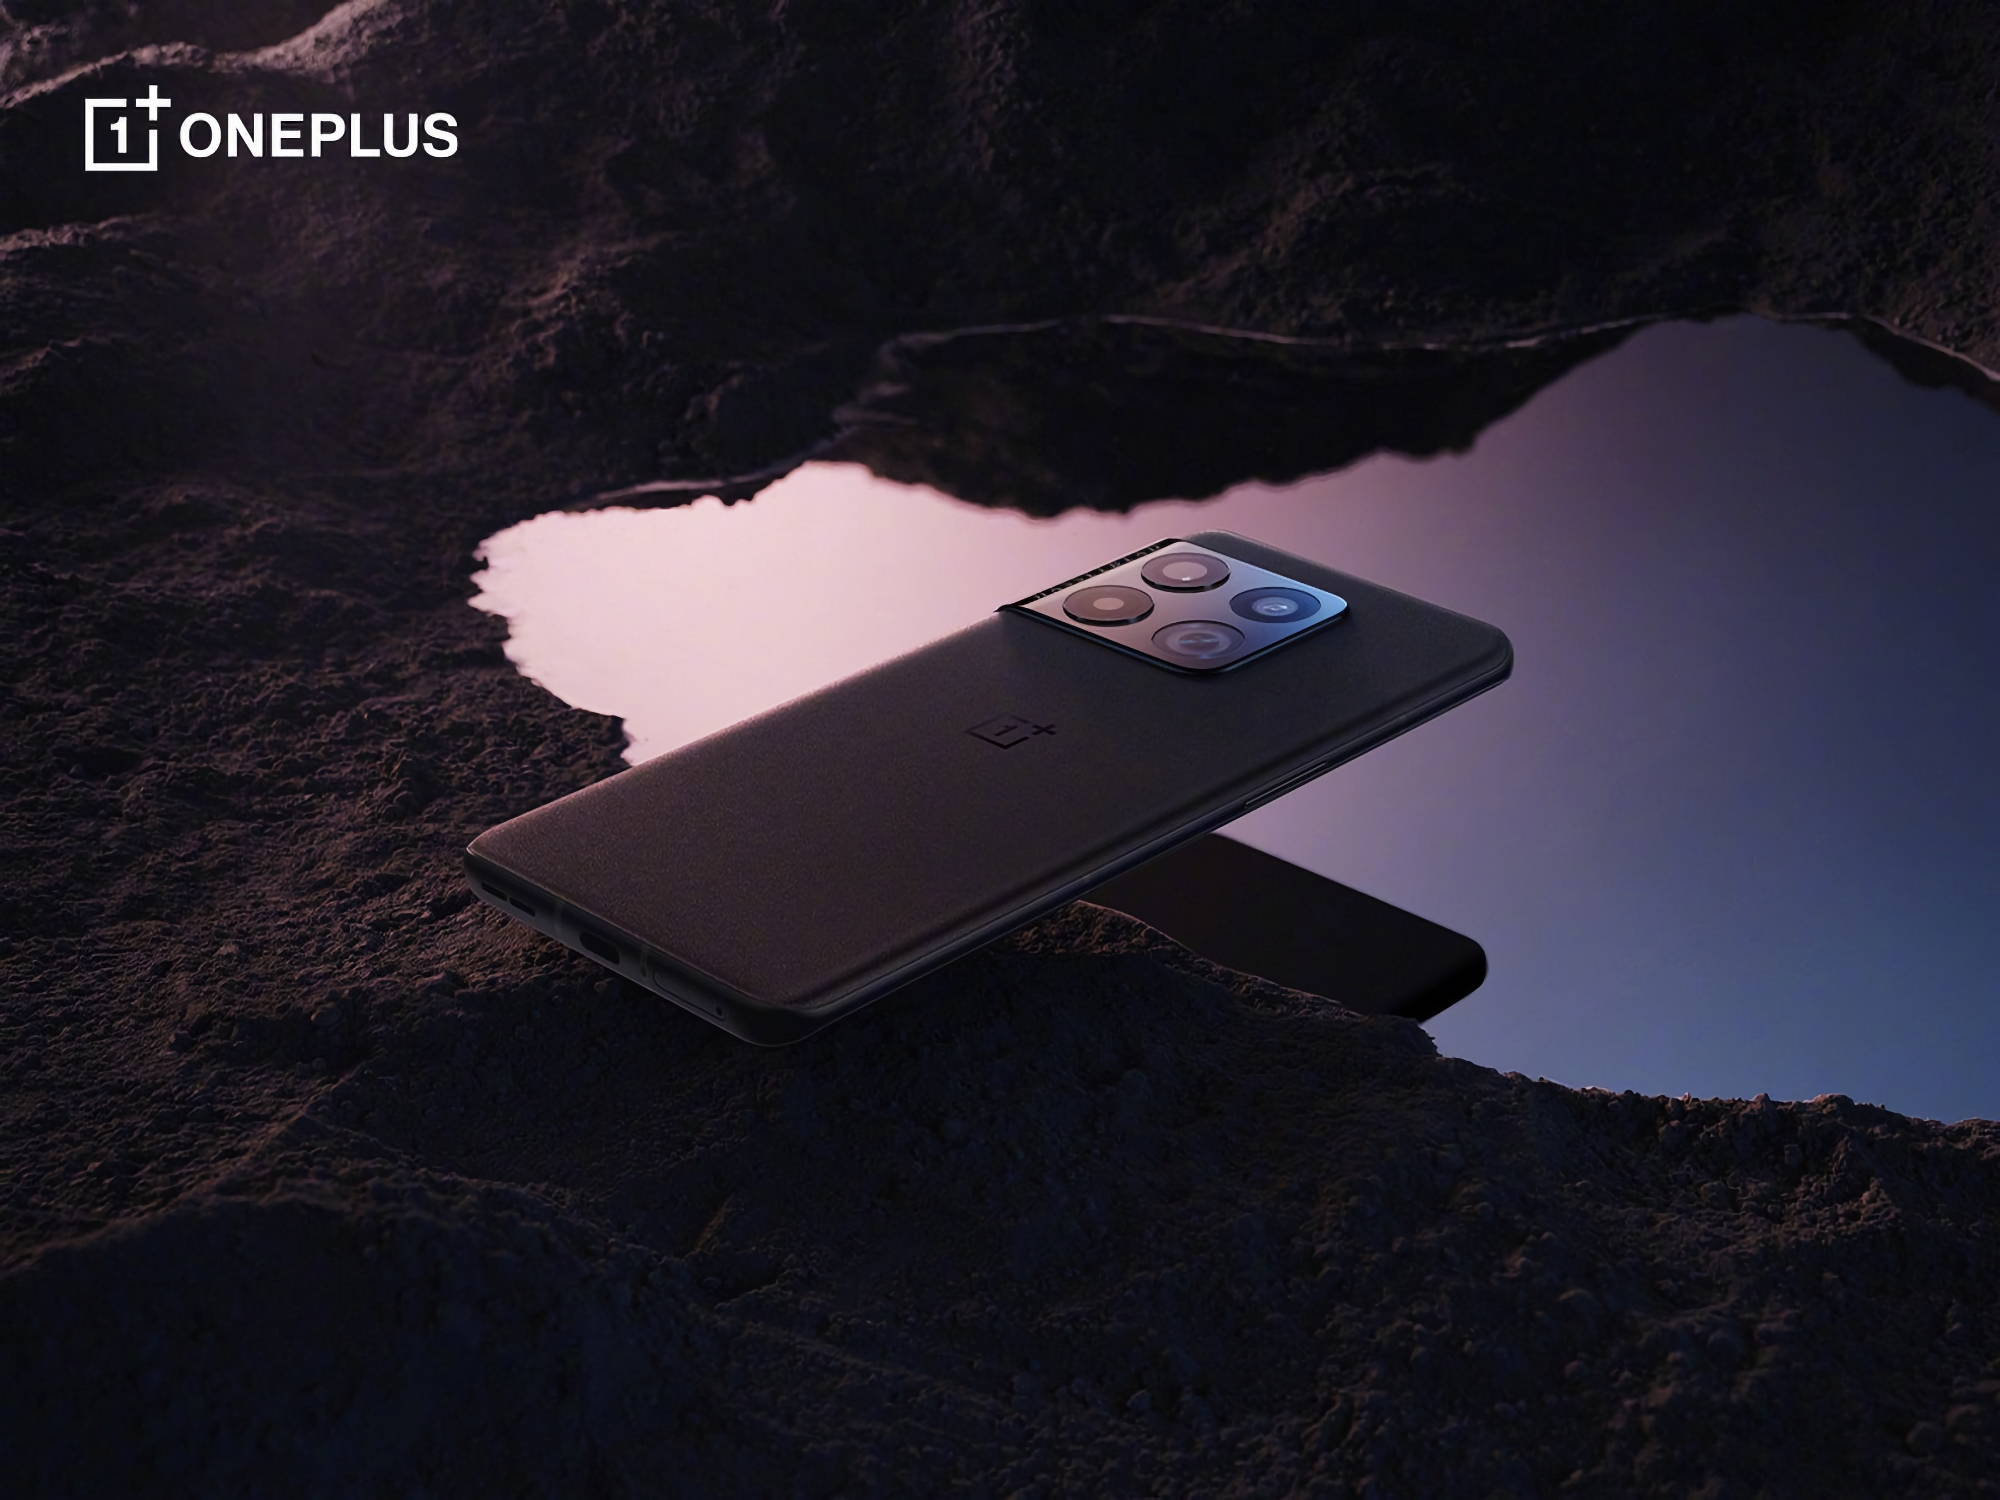 Okręt flagowy 2022 roku: OnePlus 10 Pro dostępny na Amazon za 130 dolarów taniej